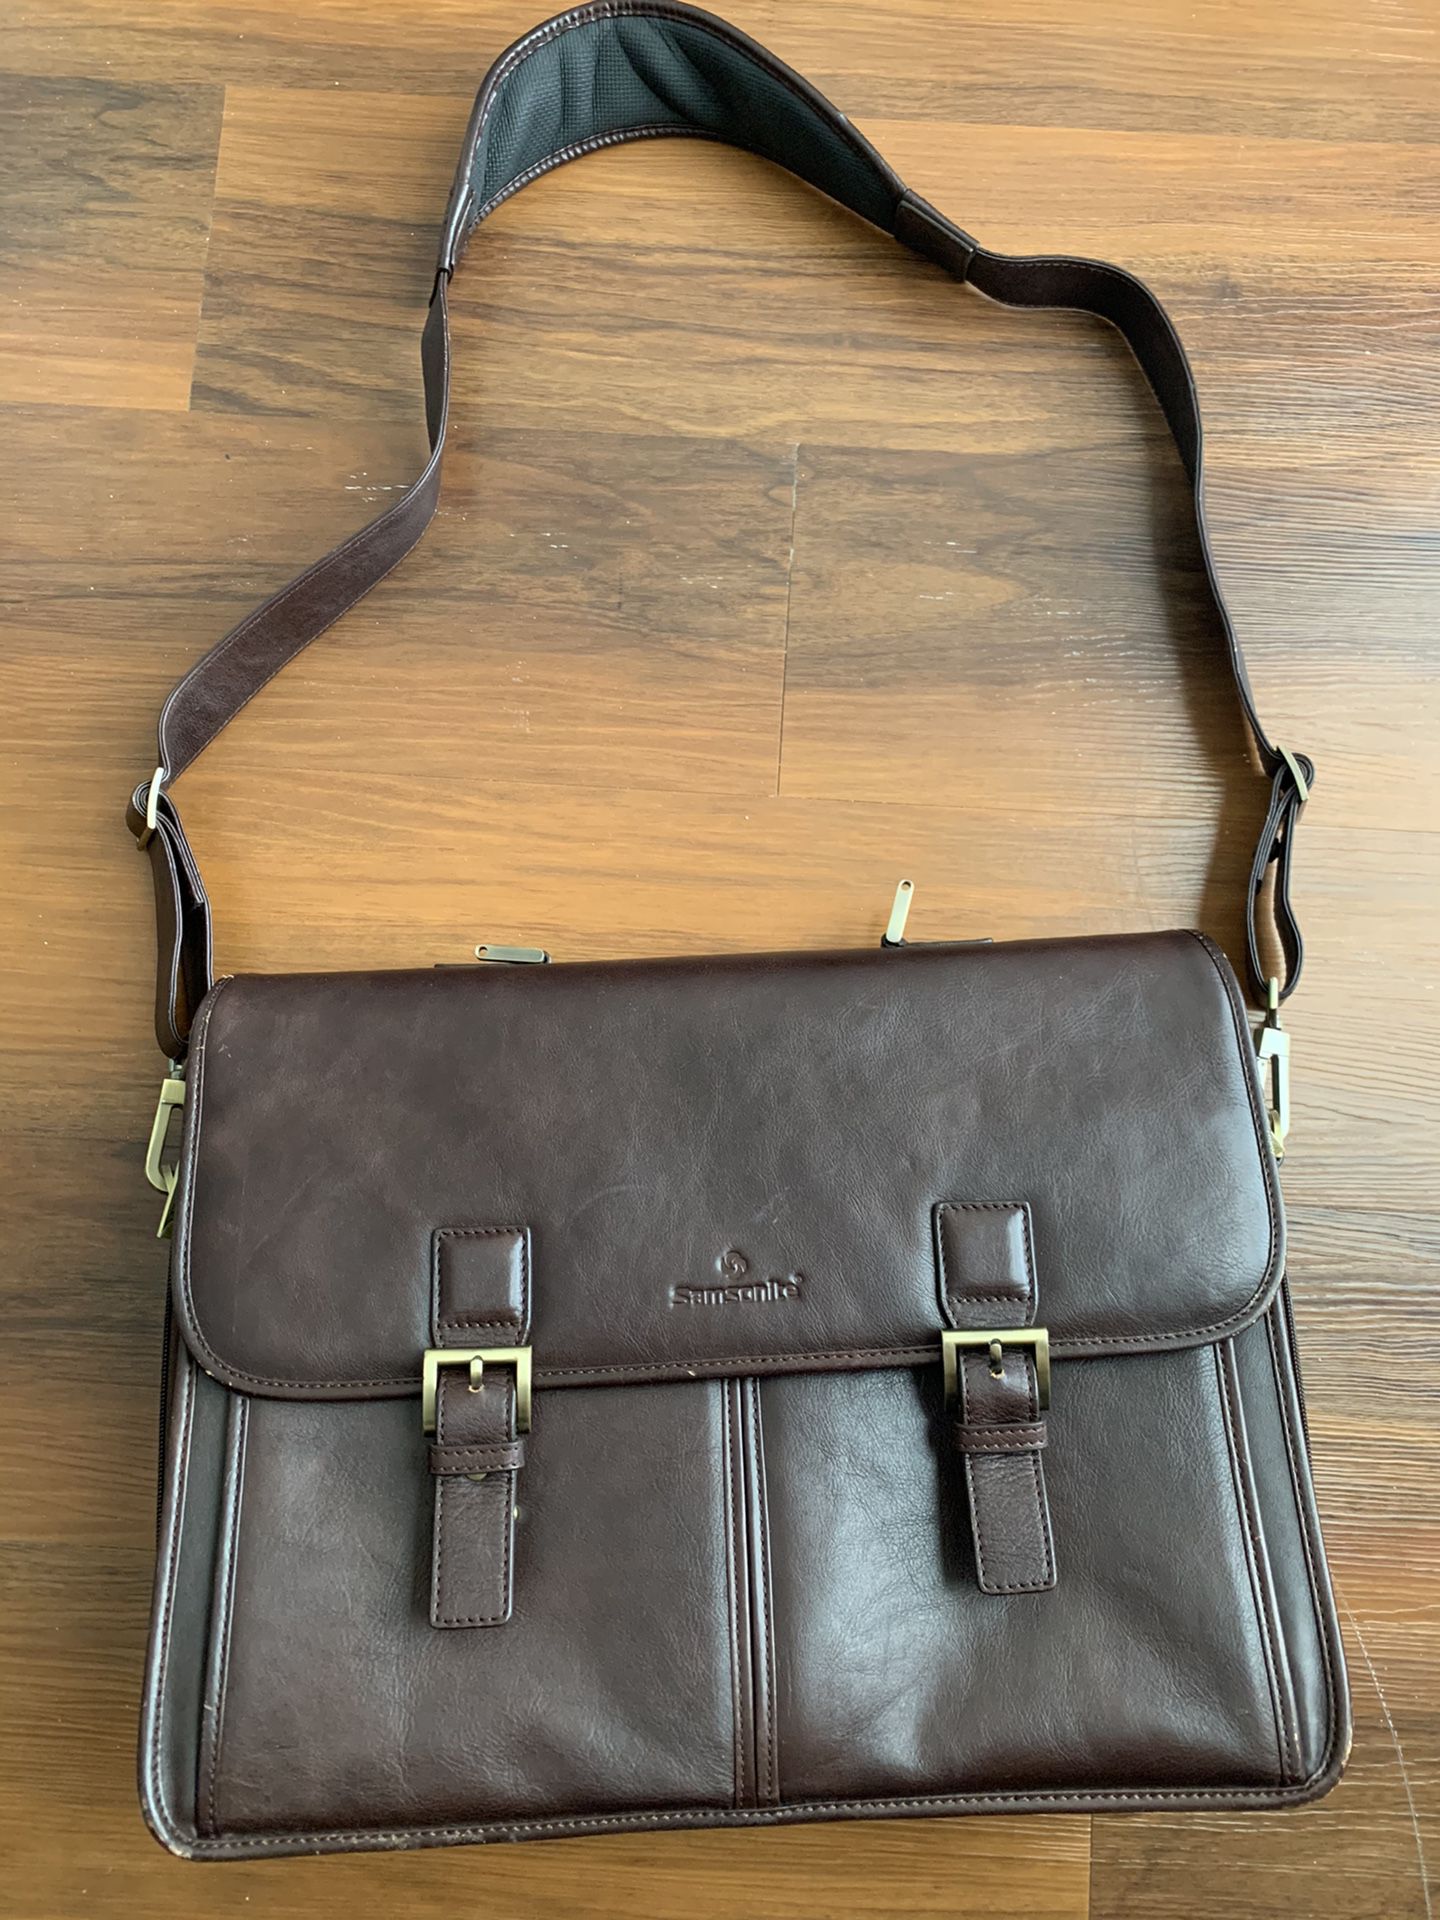 17" Samsonite Leather Laptop Briefcase Messenger Bag